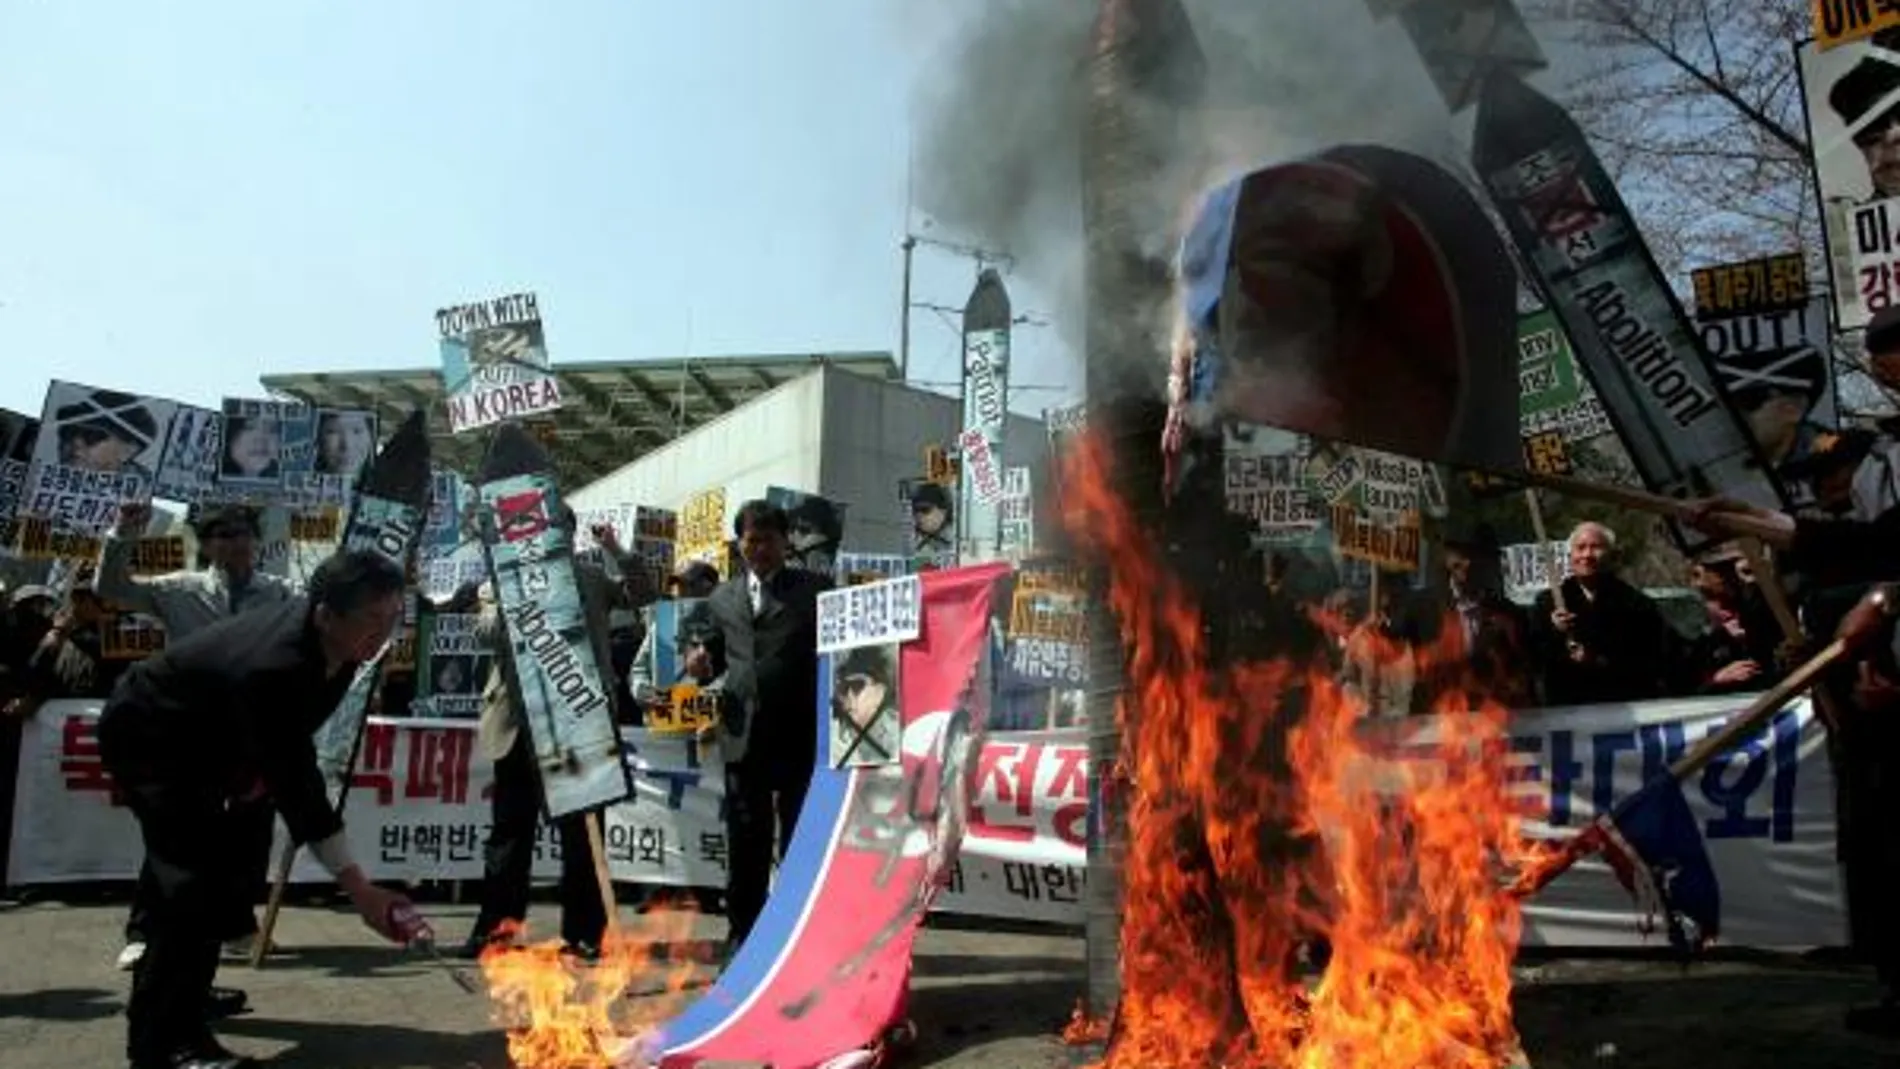 Activistas surcoreanos queman banderas y retratos del líder norcoreano, Kim Jong-Il, durante una manifestación contra Corea del Norte